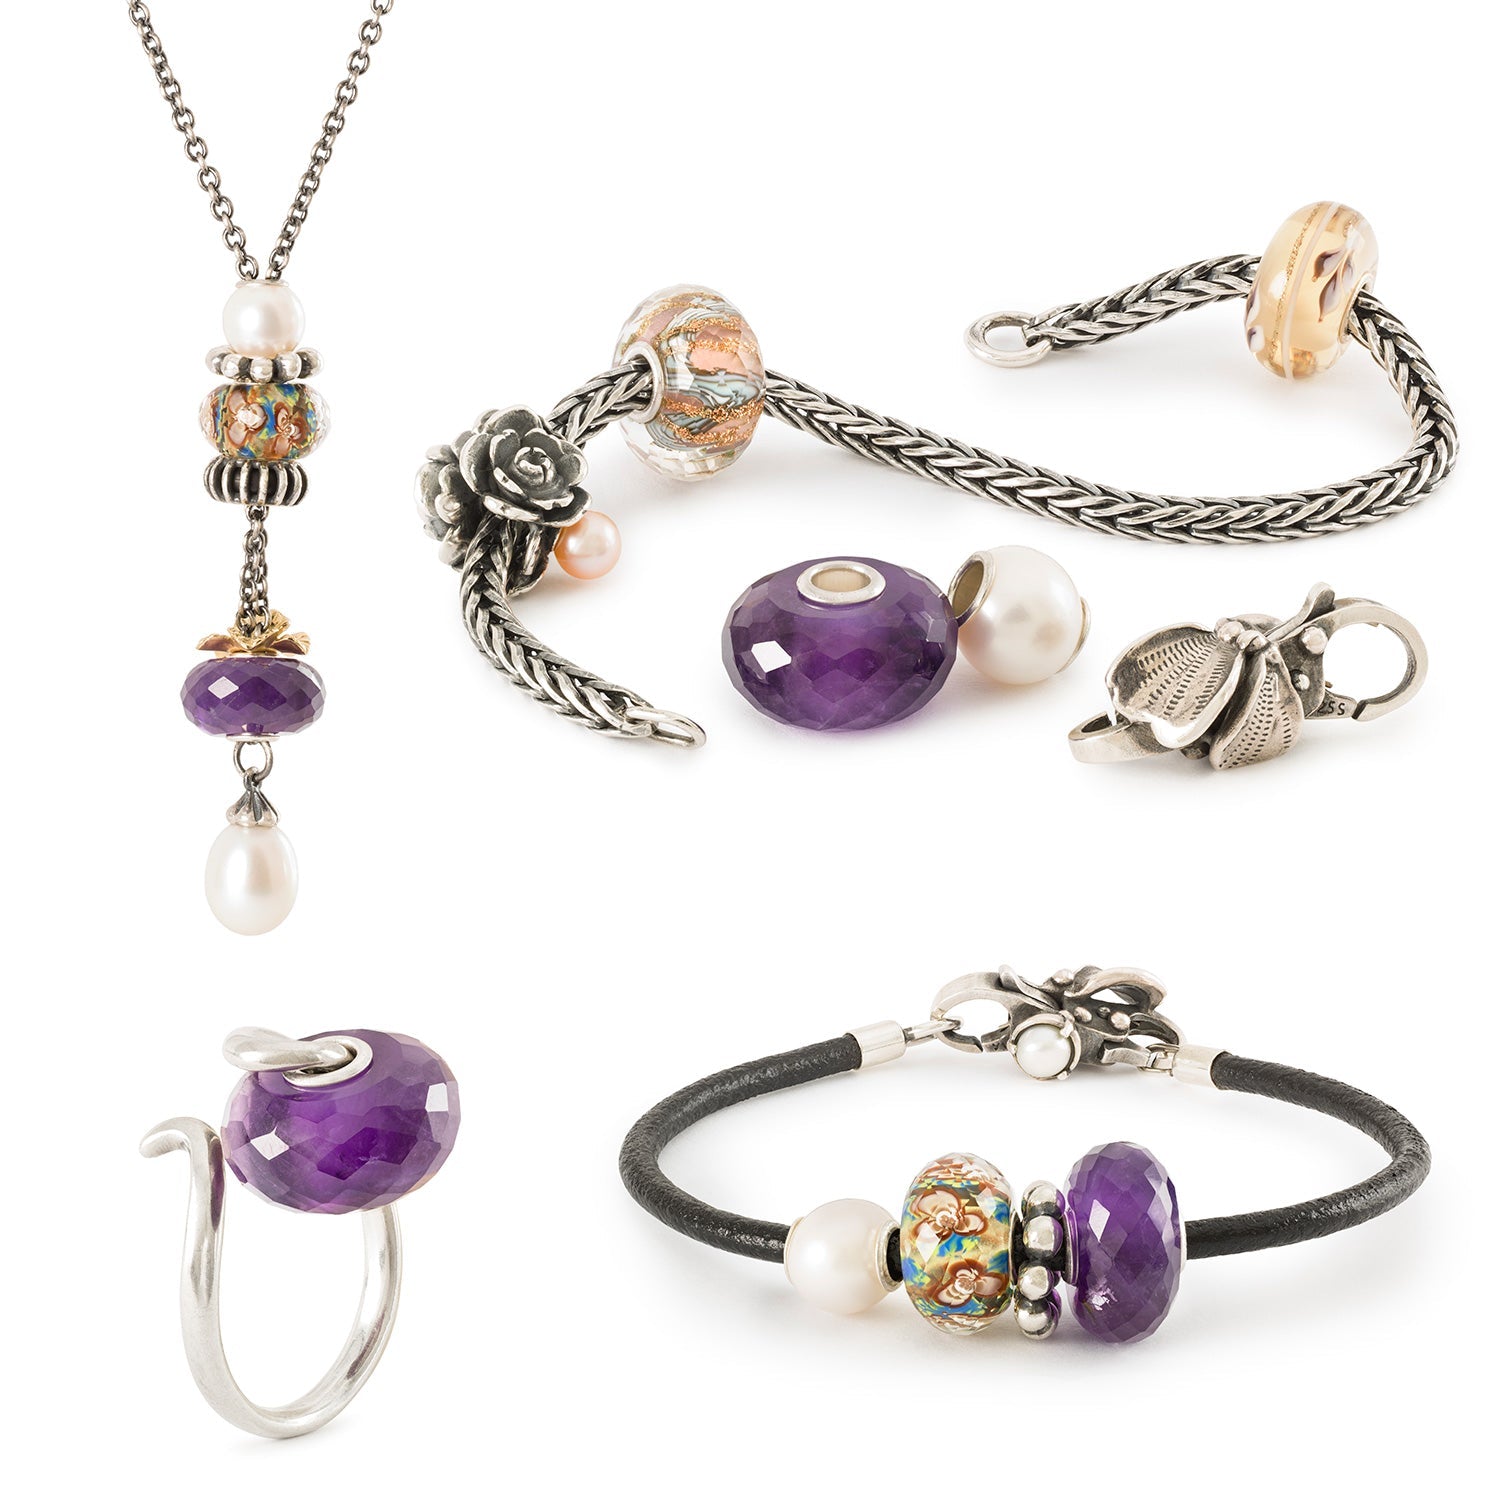 Perle Trollbeads Amethyst sur différents bijoux, collier, bracelet en argent, bracelet en cuir, bague en argent, avec des perles complémentaires.